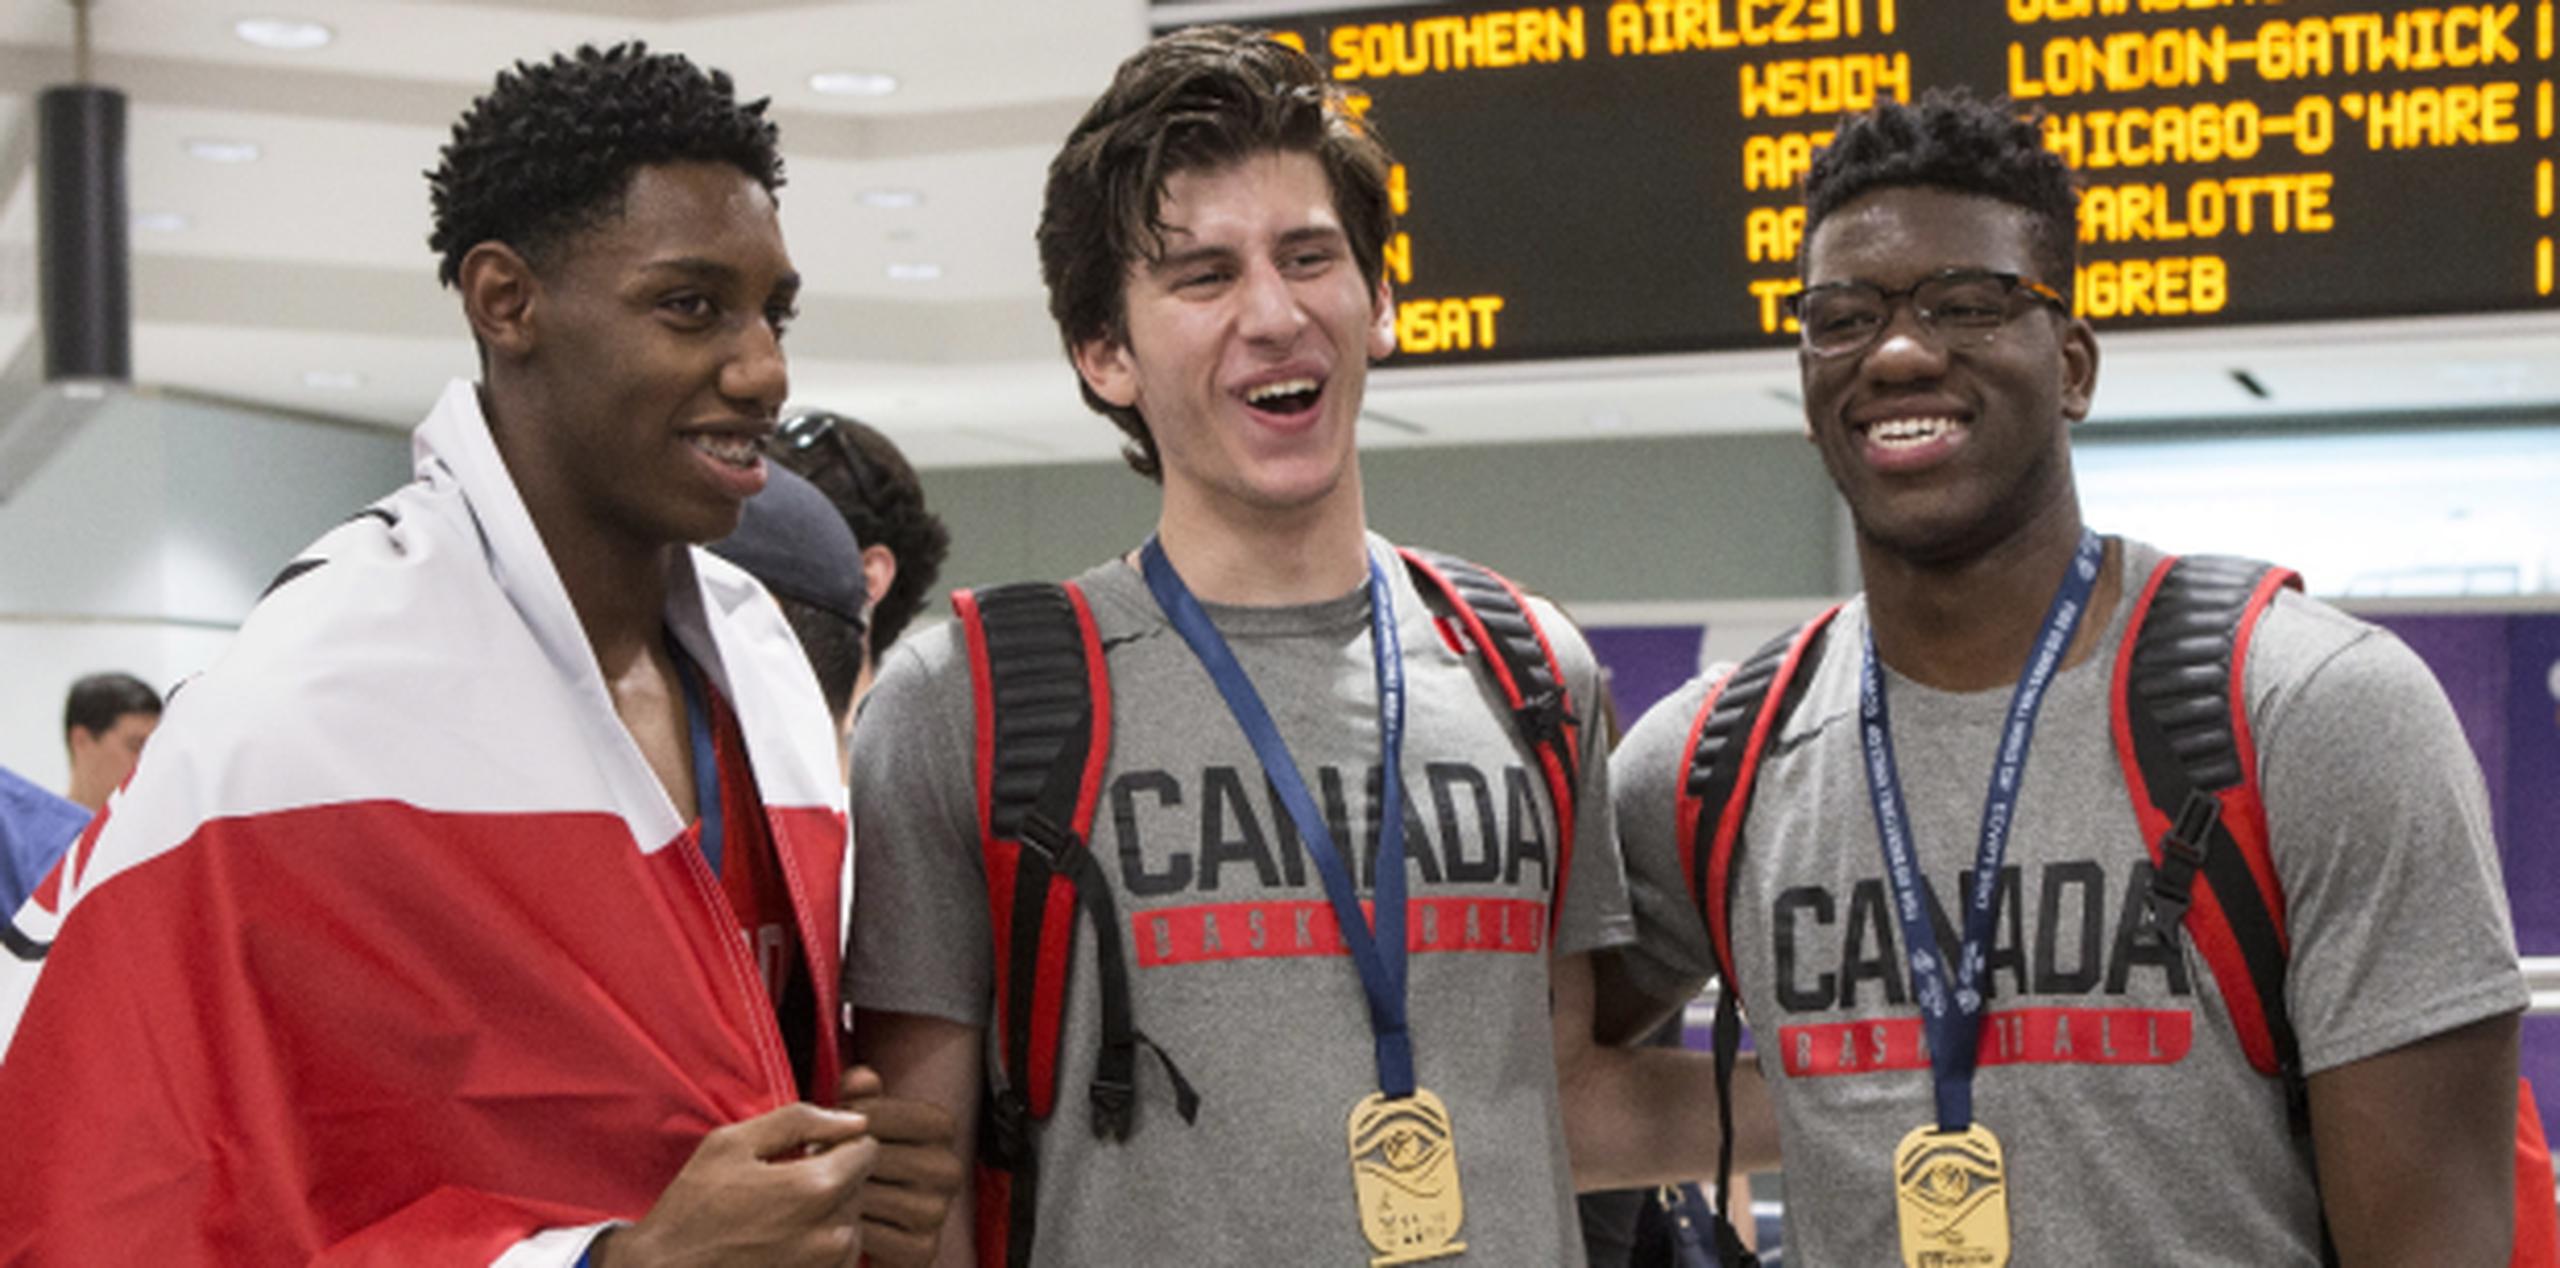 R.J Barrett, Danilo Djuricic y Amidou Bamba formaron parte de la escuadra Sub 19 de baloncesto que alcanzó la medalla de oro en el pasado Mundial de Egipto. (Chris Young / The Canadian Press via AP)